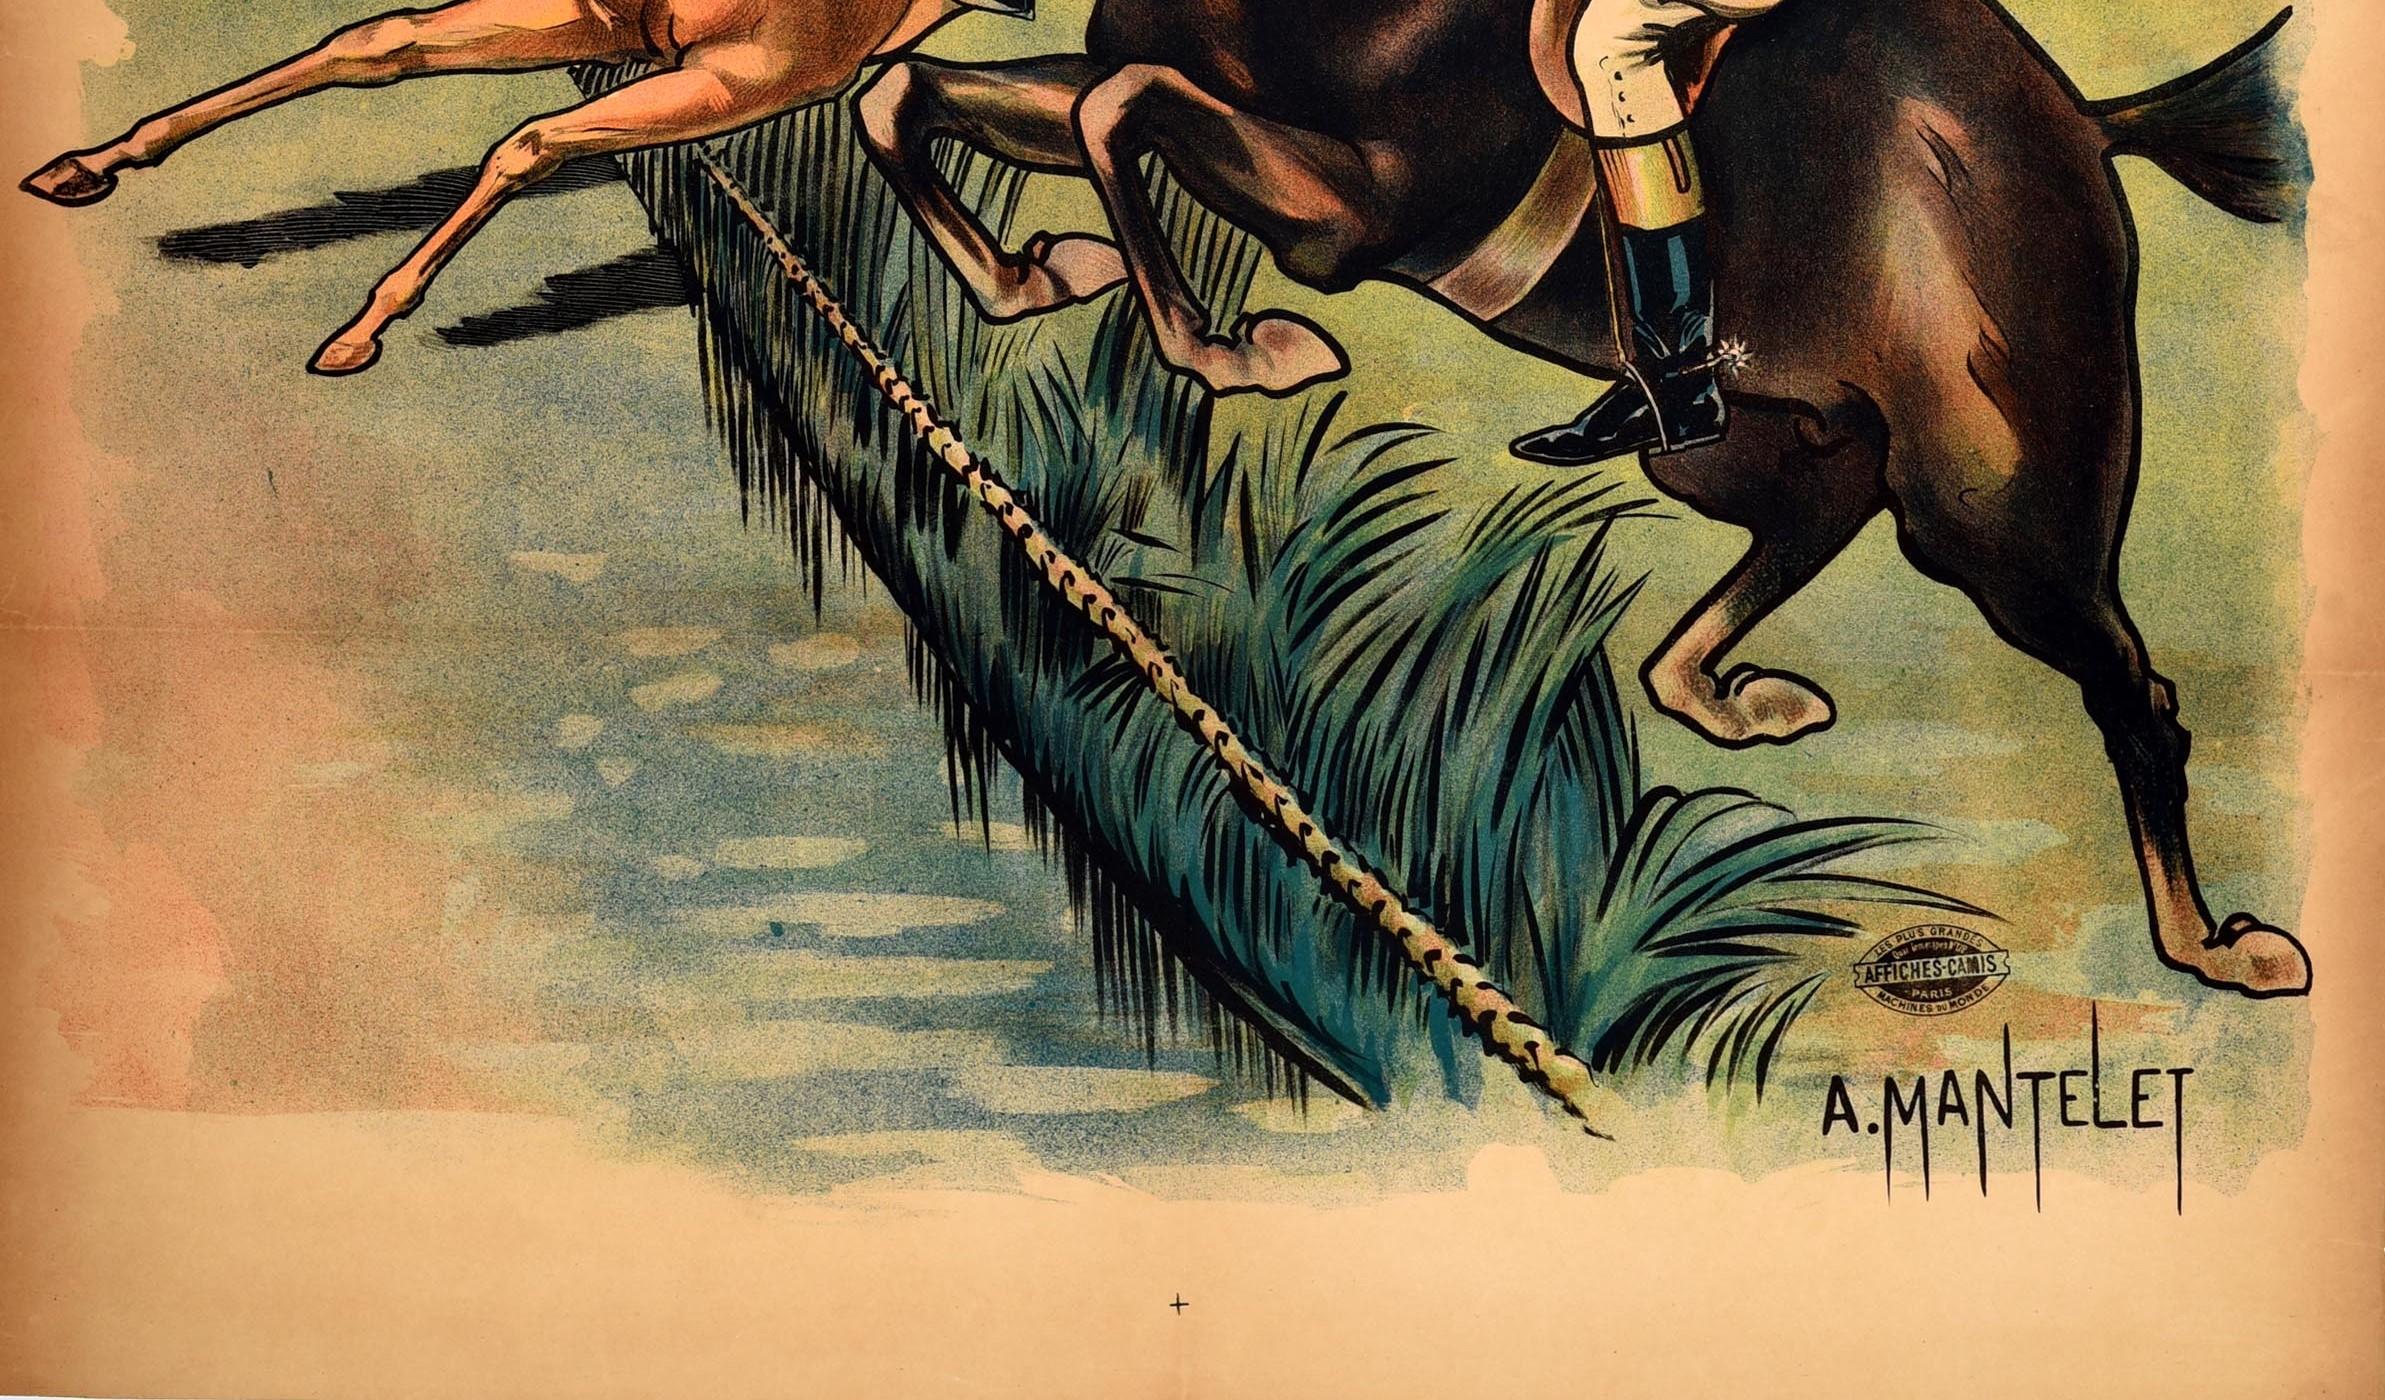 Originales antikes Reitsportplakat für Pferderennen mit einer Illustration von Jockeys auf Pferden, die über einen Zaun und Wasser springen, von dem Maler Albert Mantelet (Albert Mantelet-Goguet; 1858-1958), einem Affiches-Camis-Stempel aus Paris